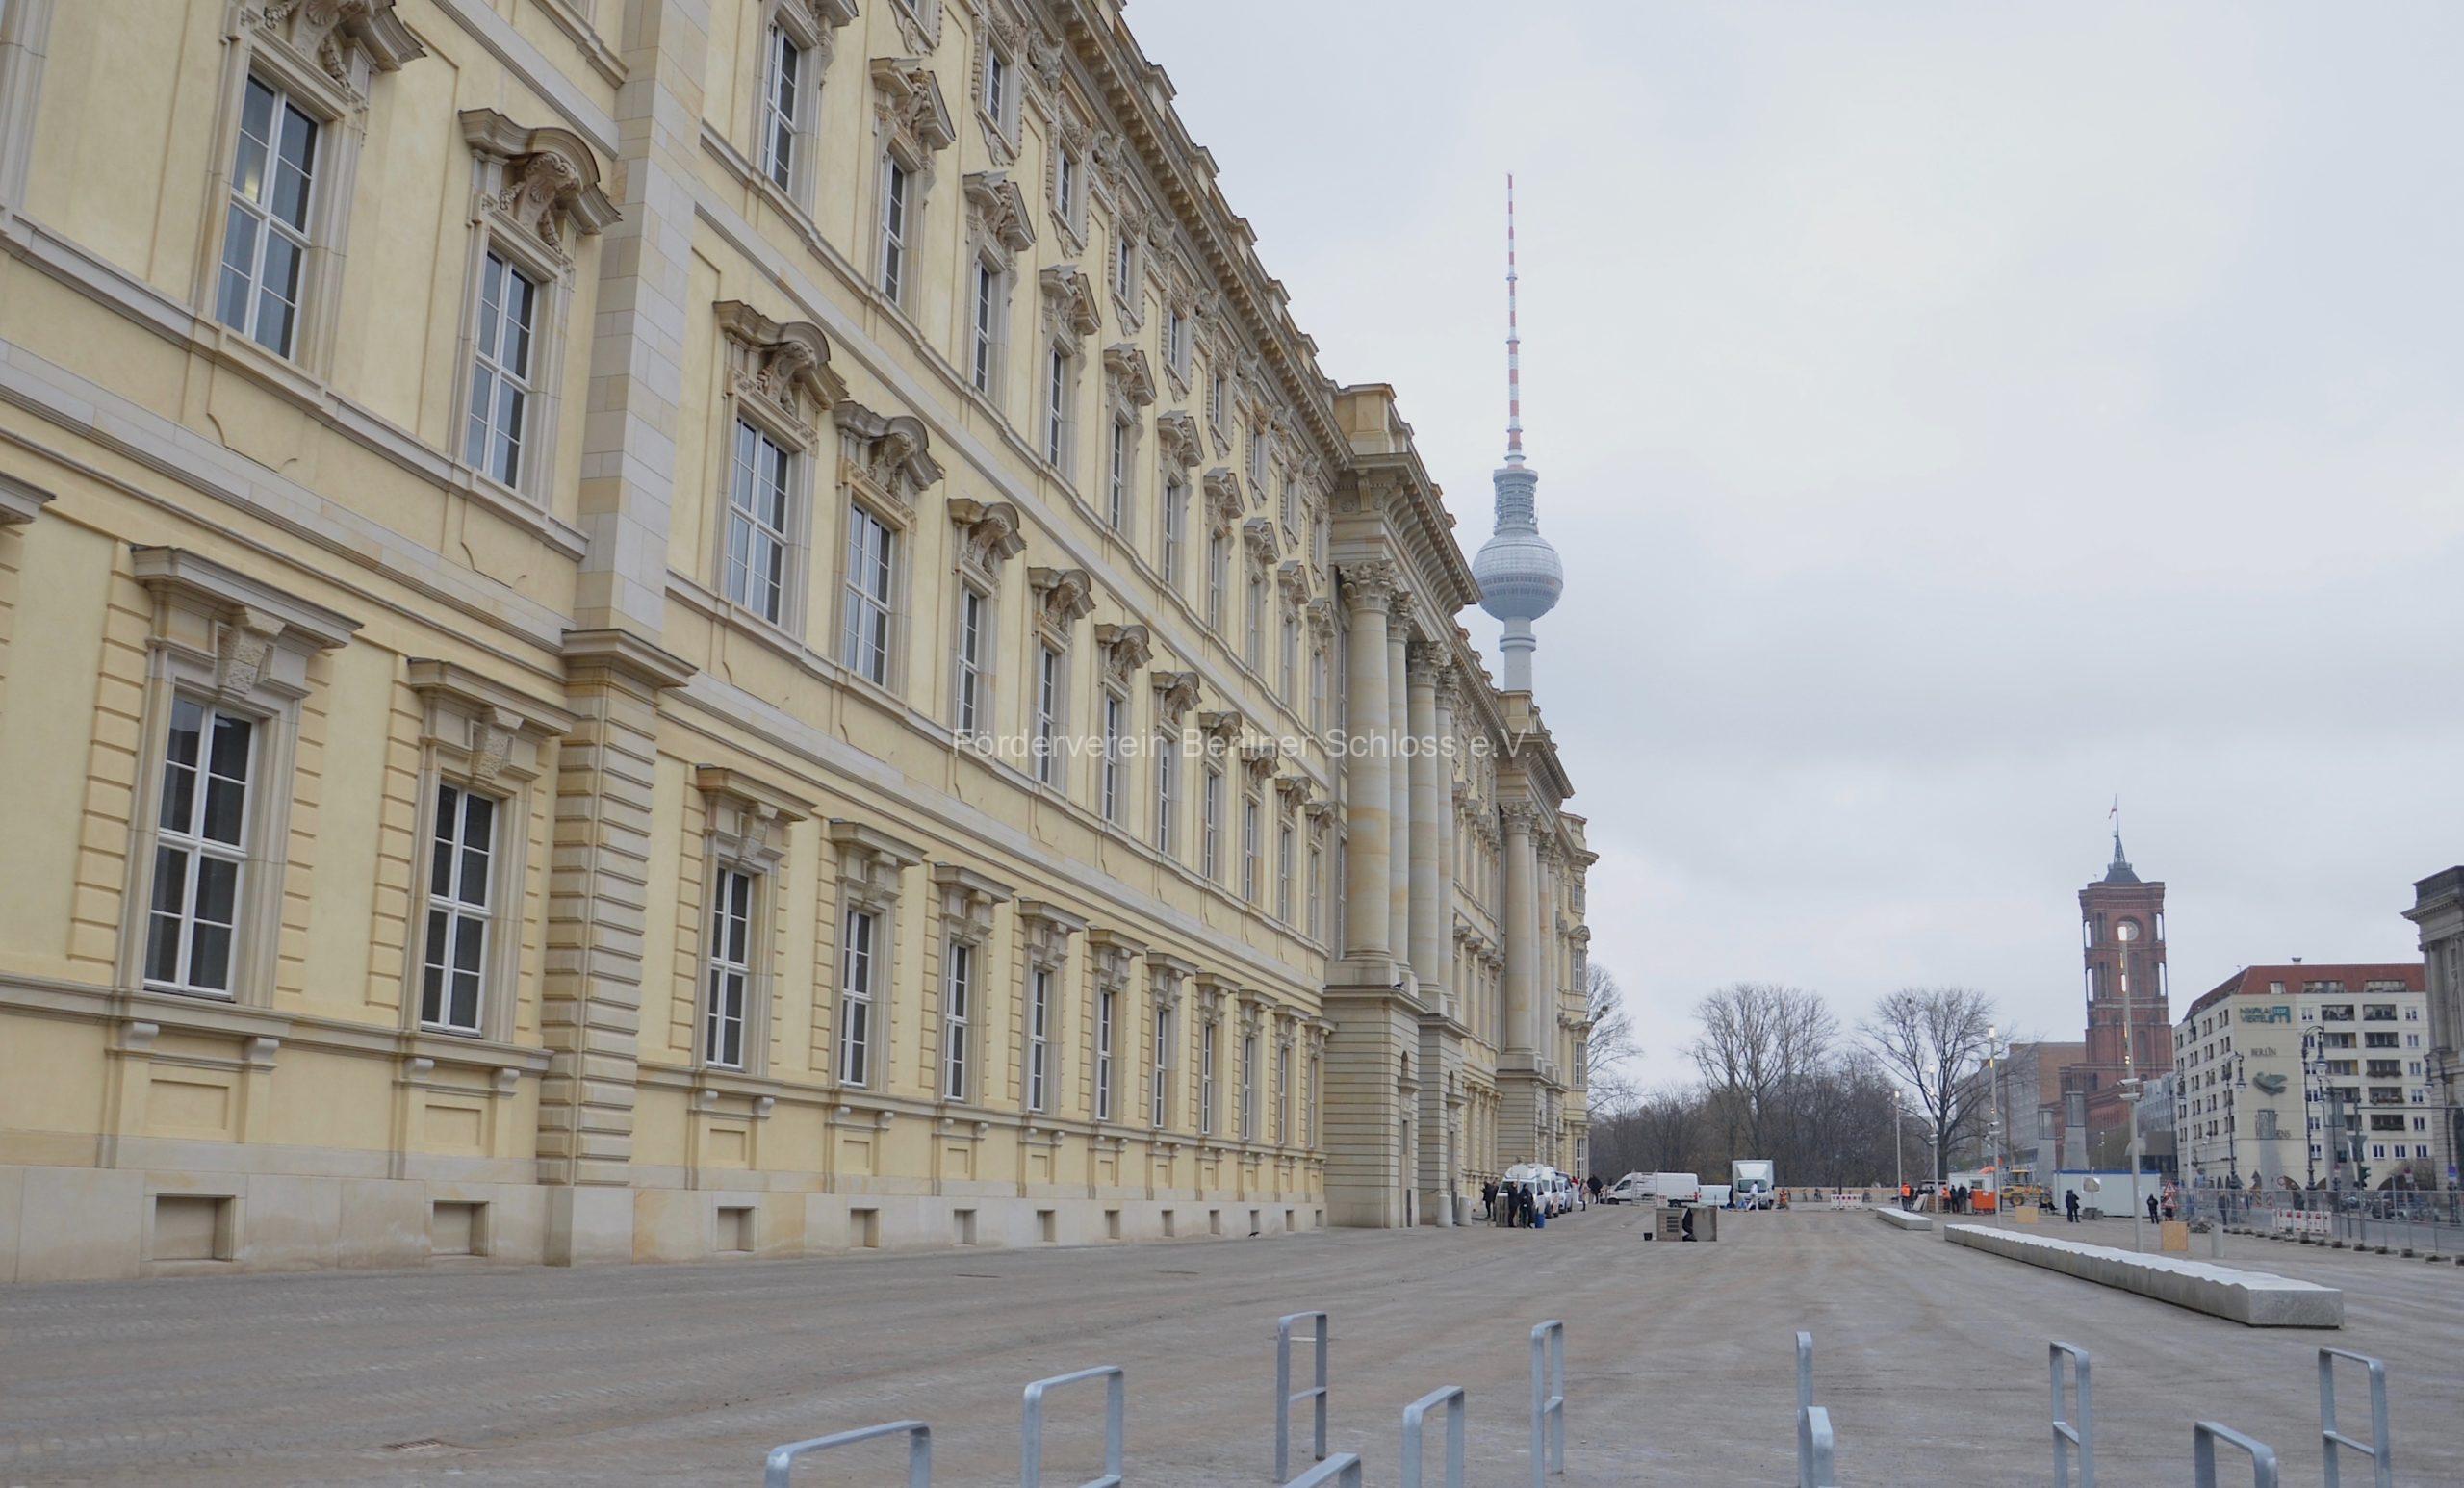 "Das sind die Pläne für Berlins historische Mitte" | Berliner Schloss